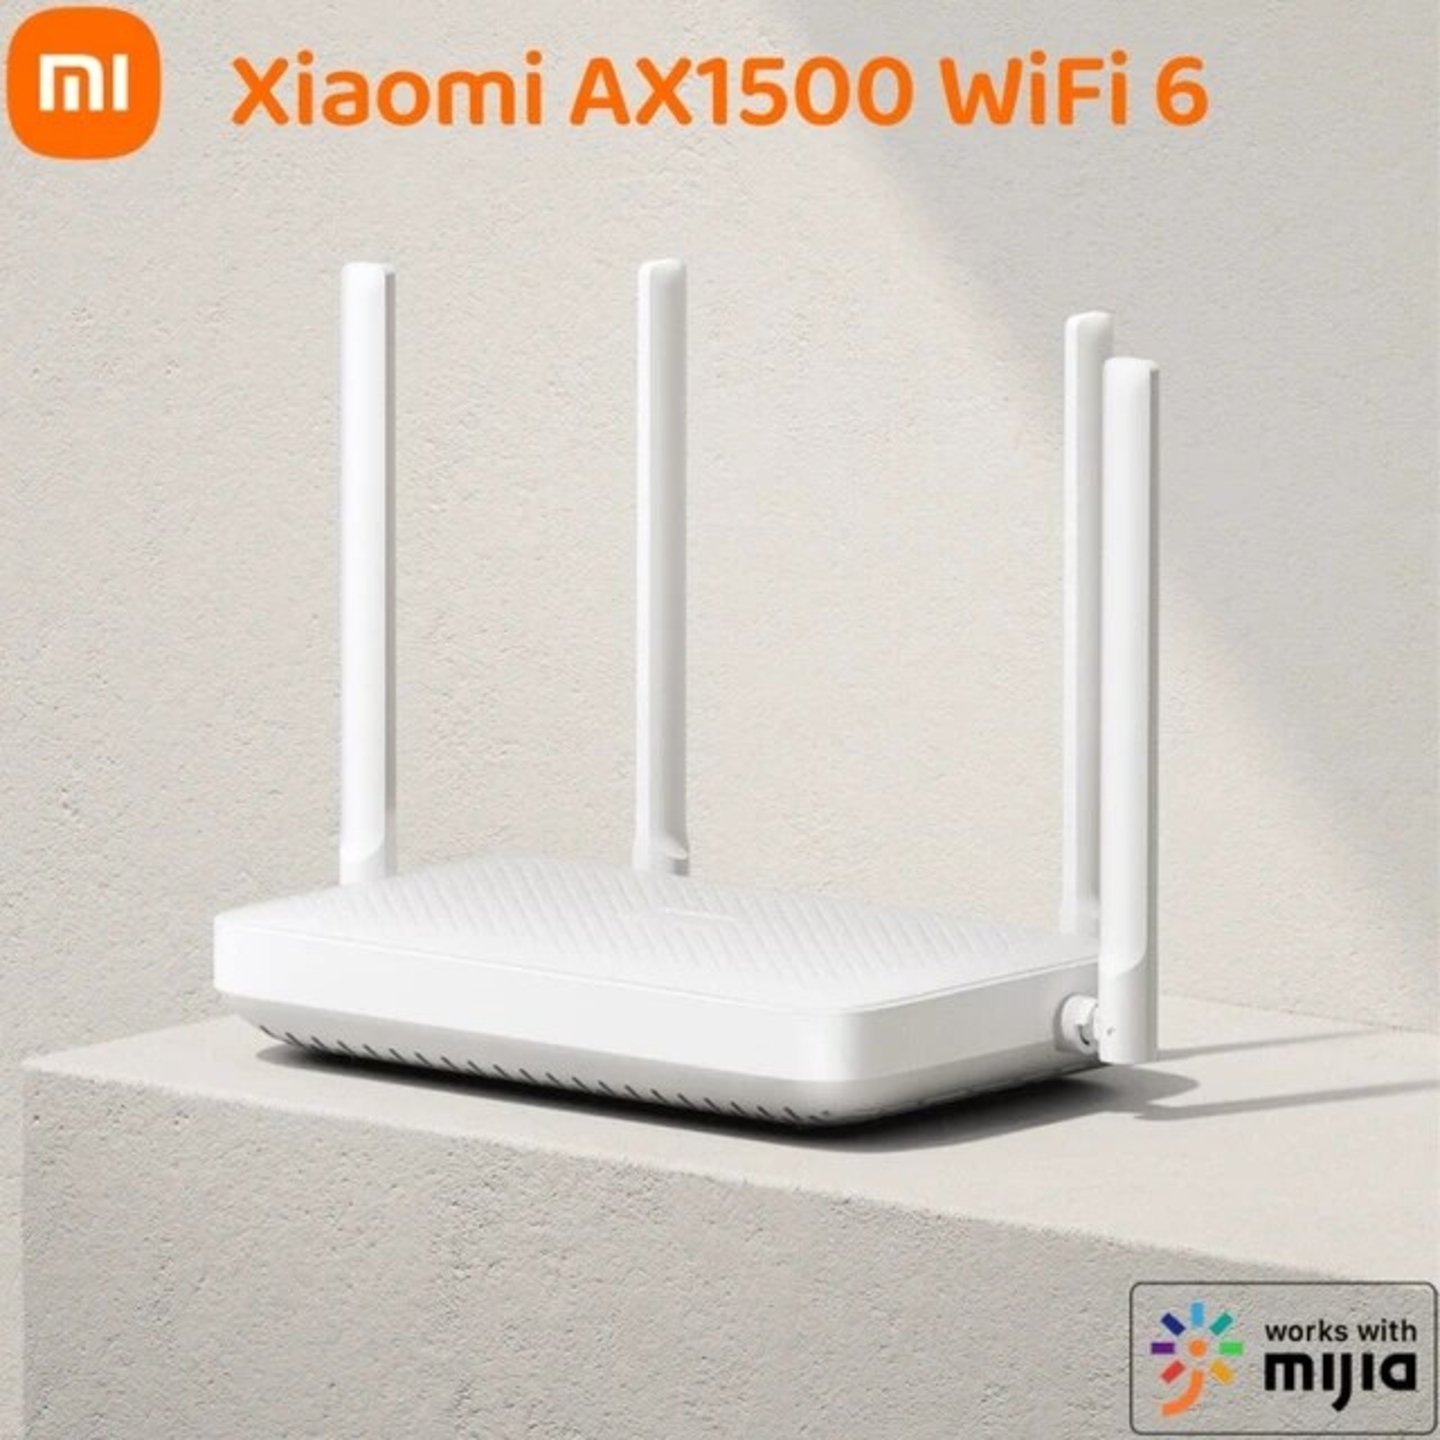 Xiaomi promete WiFi 6 de largo alcance con su potentísimo router mesh  rebajado casi a precio mínimo